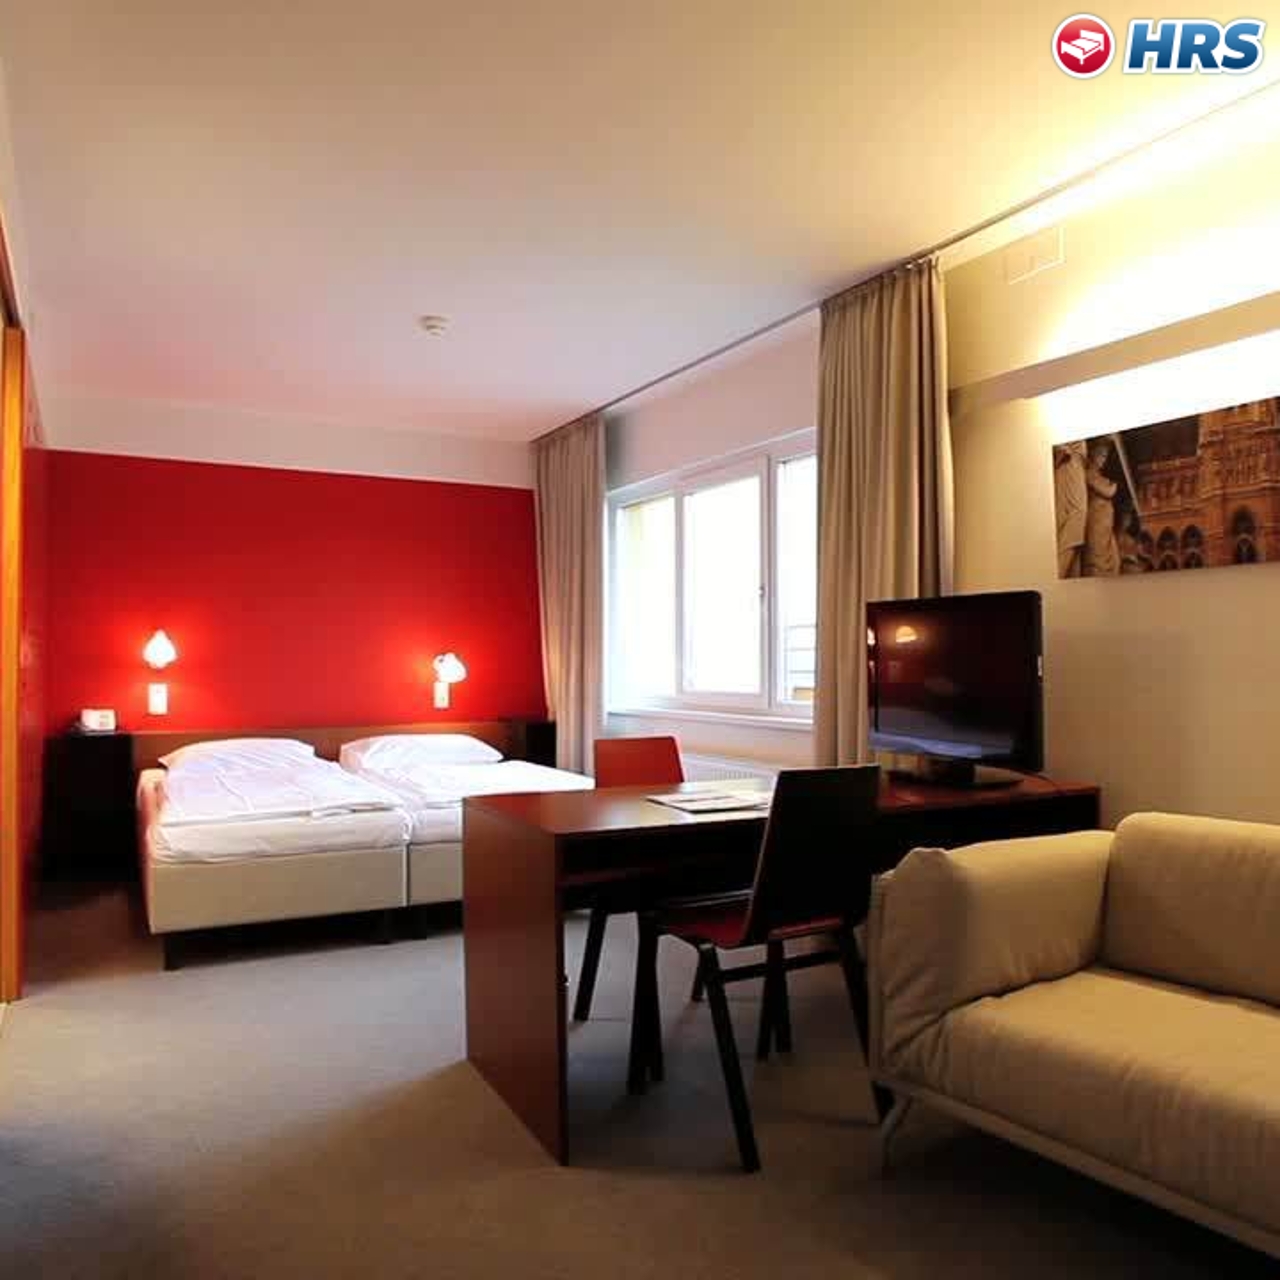 7 Days Premium Hotel Wien - 3 HRS star hotel in Vienna (Vienna)